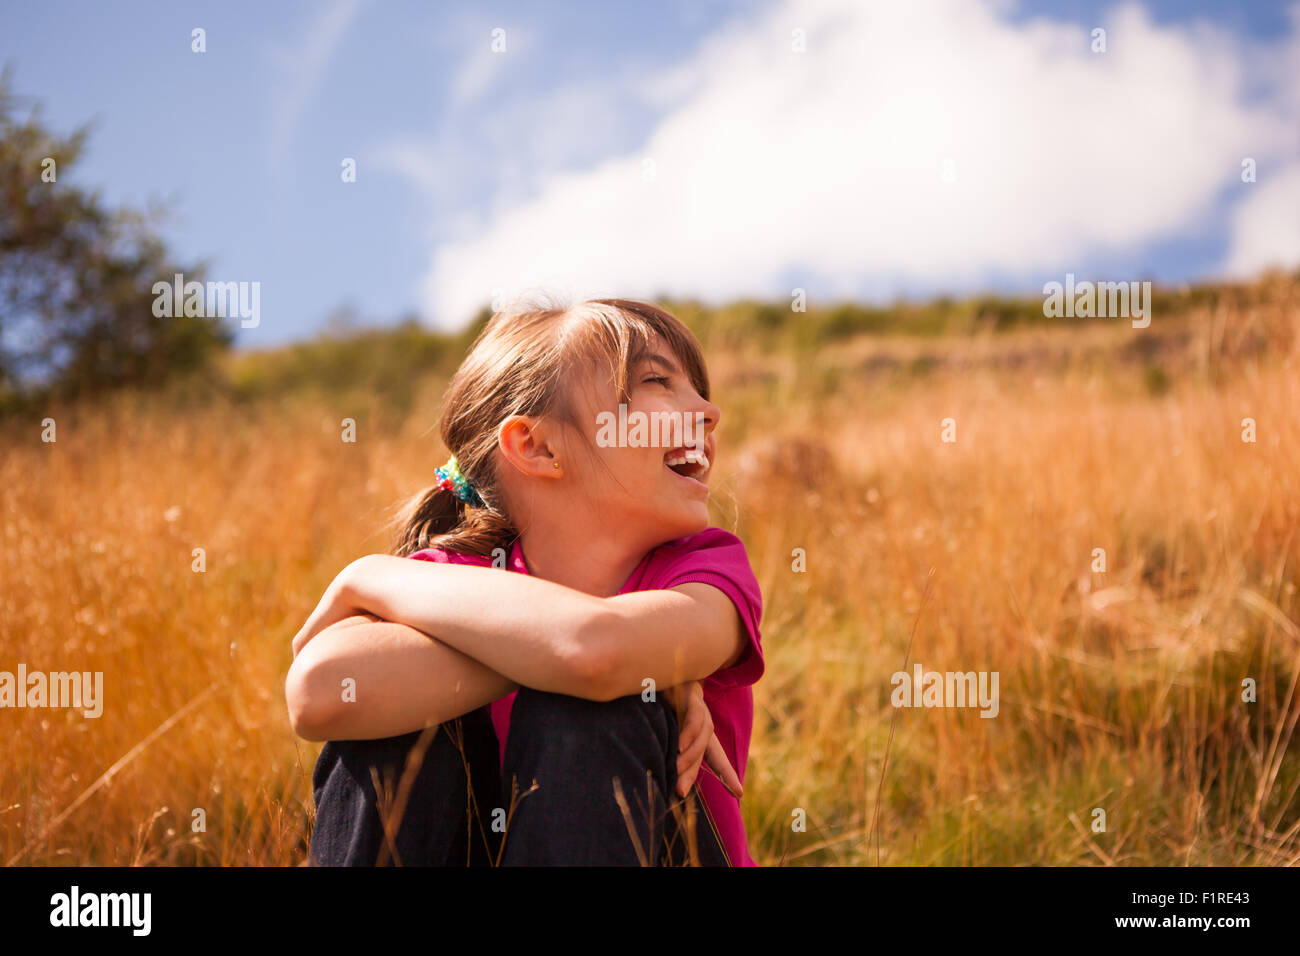 Piuttosto giovane ragazza seduta su una banca di erba ridere su un luminoso giorno Foto Stock